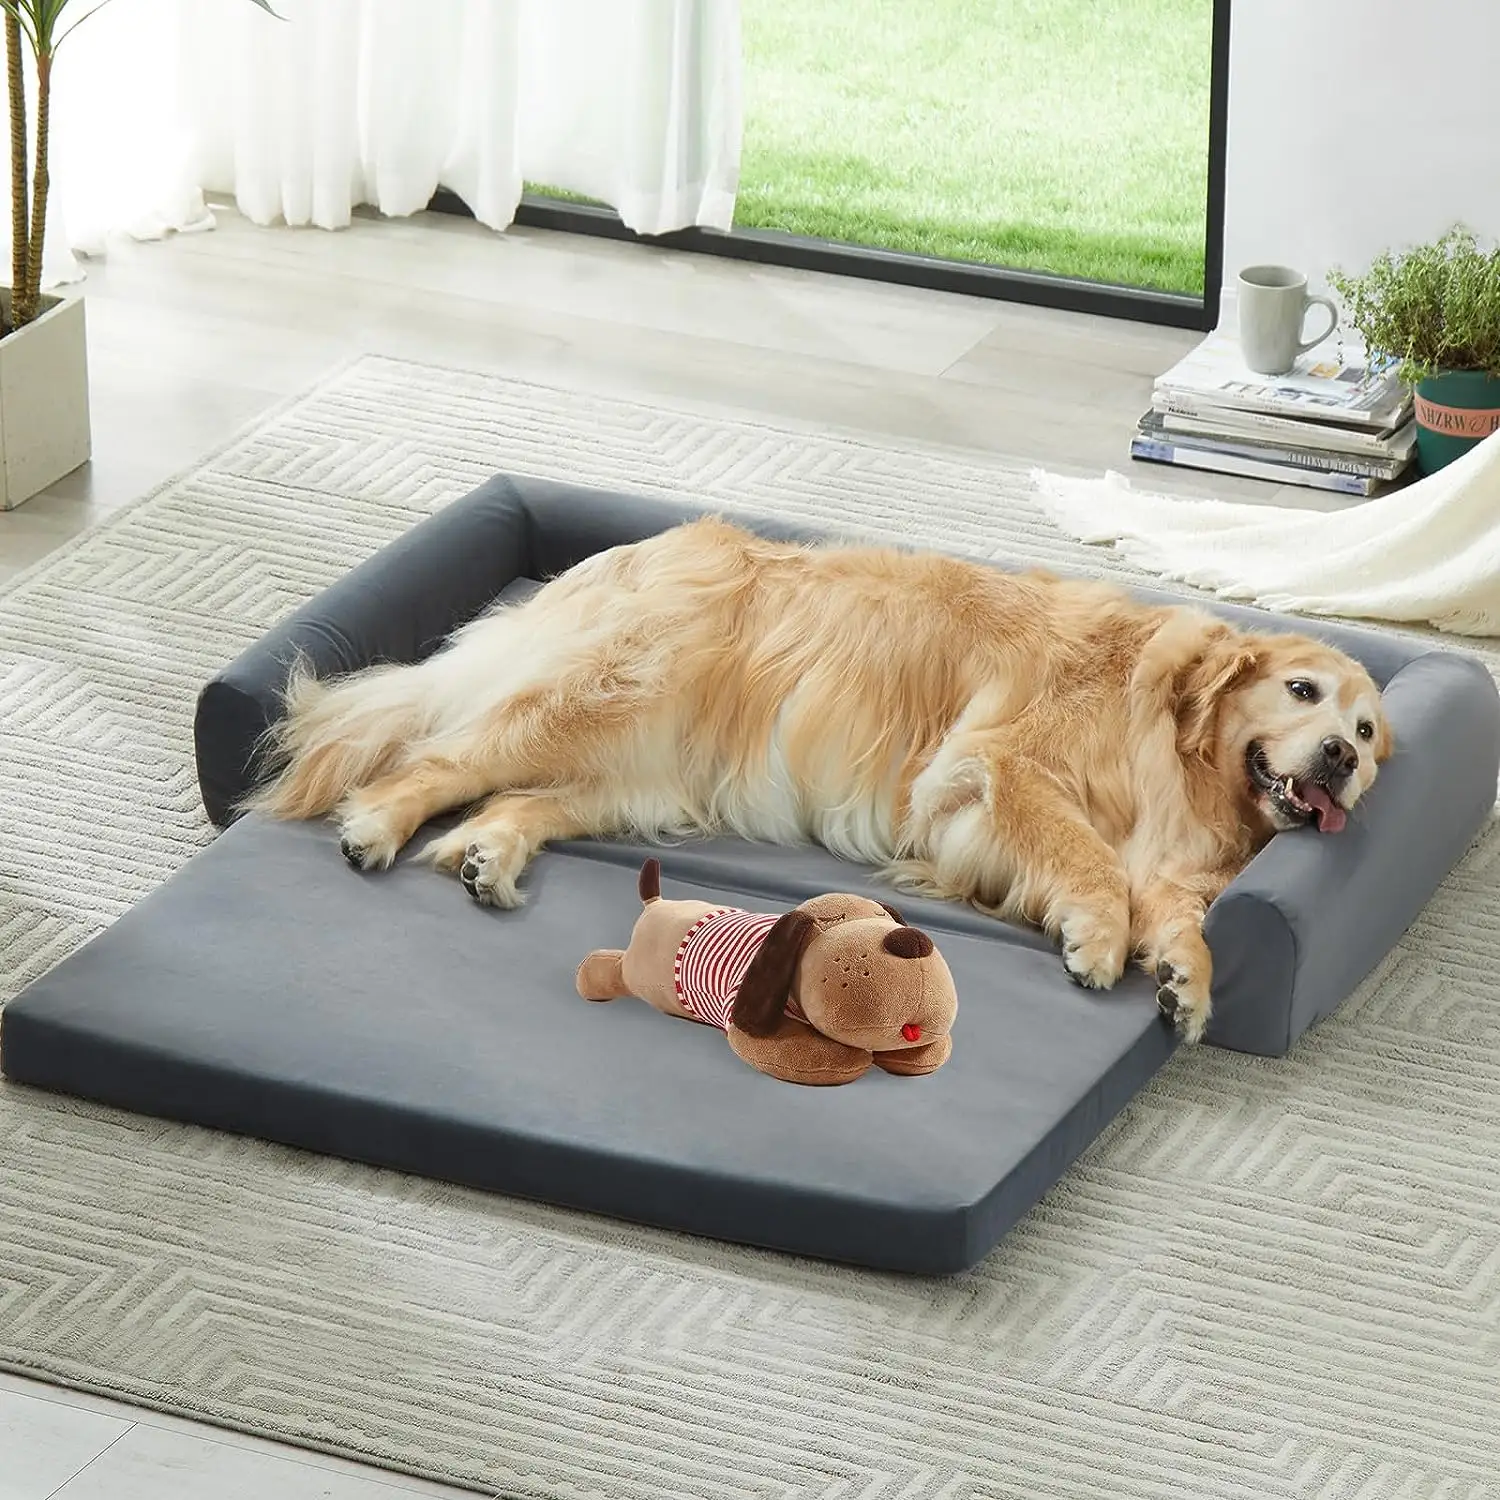 Precio al por mayor, camas personalizadas de doble capa para perros de espuma viscoelástica de Salud Ambiental de gran espacio con caja de embalaje de color